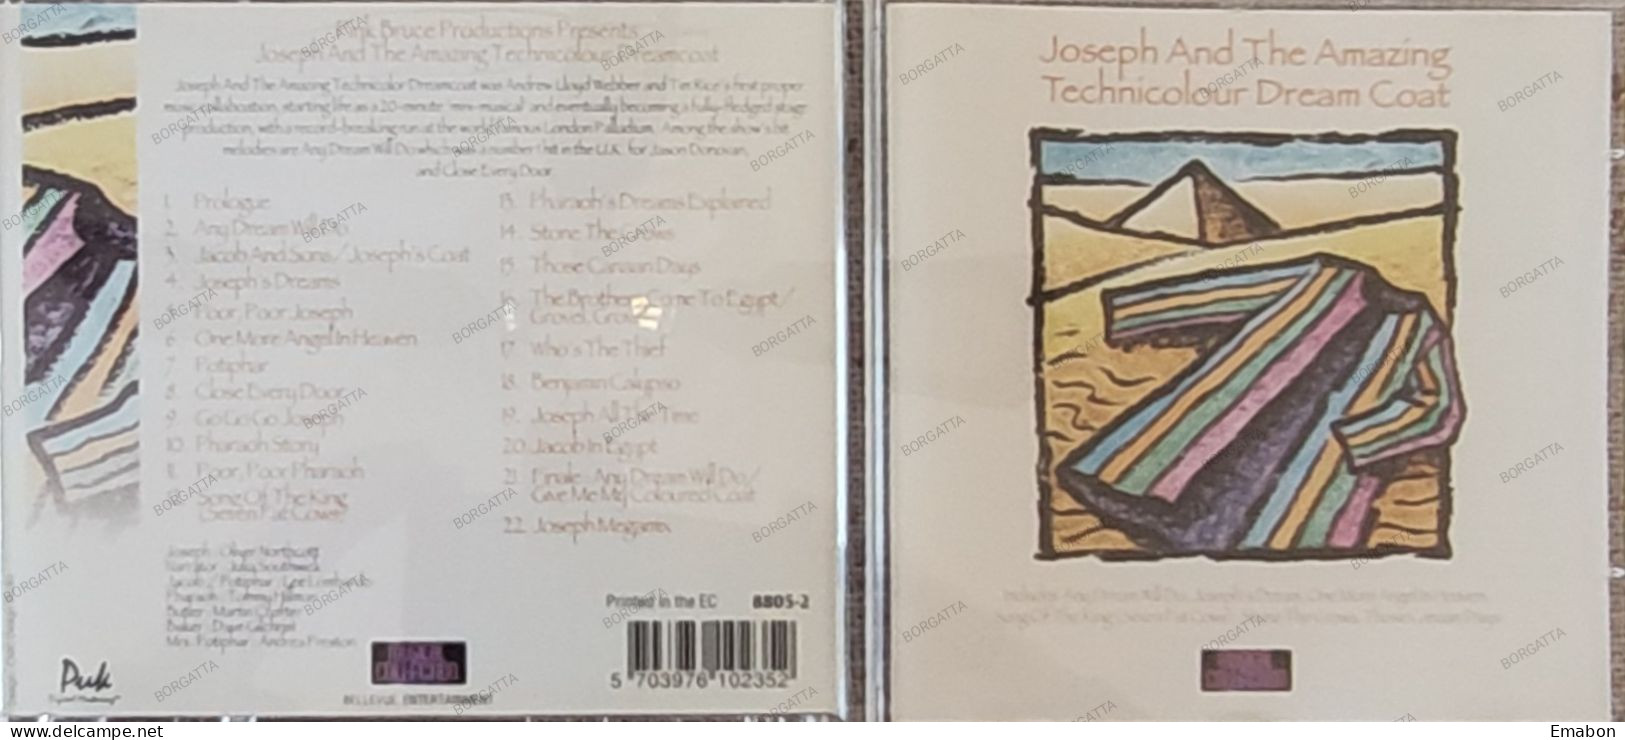 BORGATTA - FILM MUSIC - Cd JOSEPH AND THE AMAZING TECHNICOLOR DREAMCOAT - BELLEVUE 1996 - USATO In Buono Stato - Soundtracks, Film Music